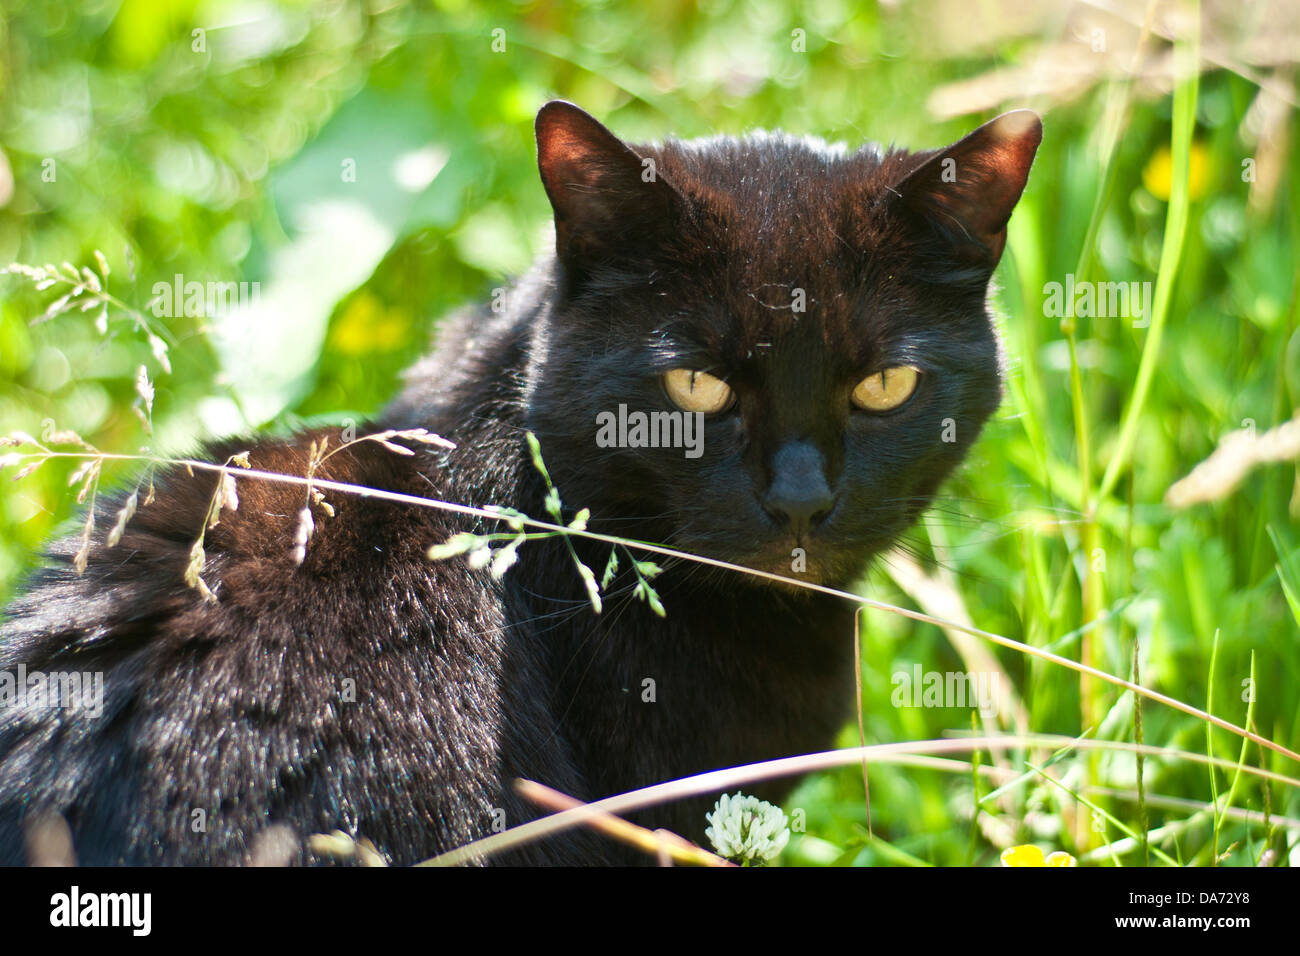 Un chat noir avec des yeux jaunes perçants regardant se trouve dans un jardin d'herbe verte Banque D'Images